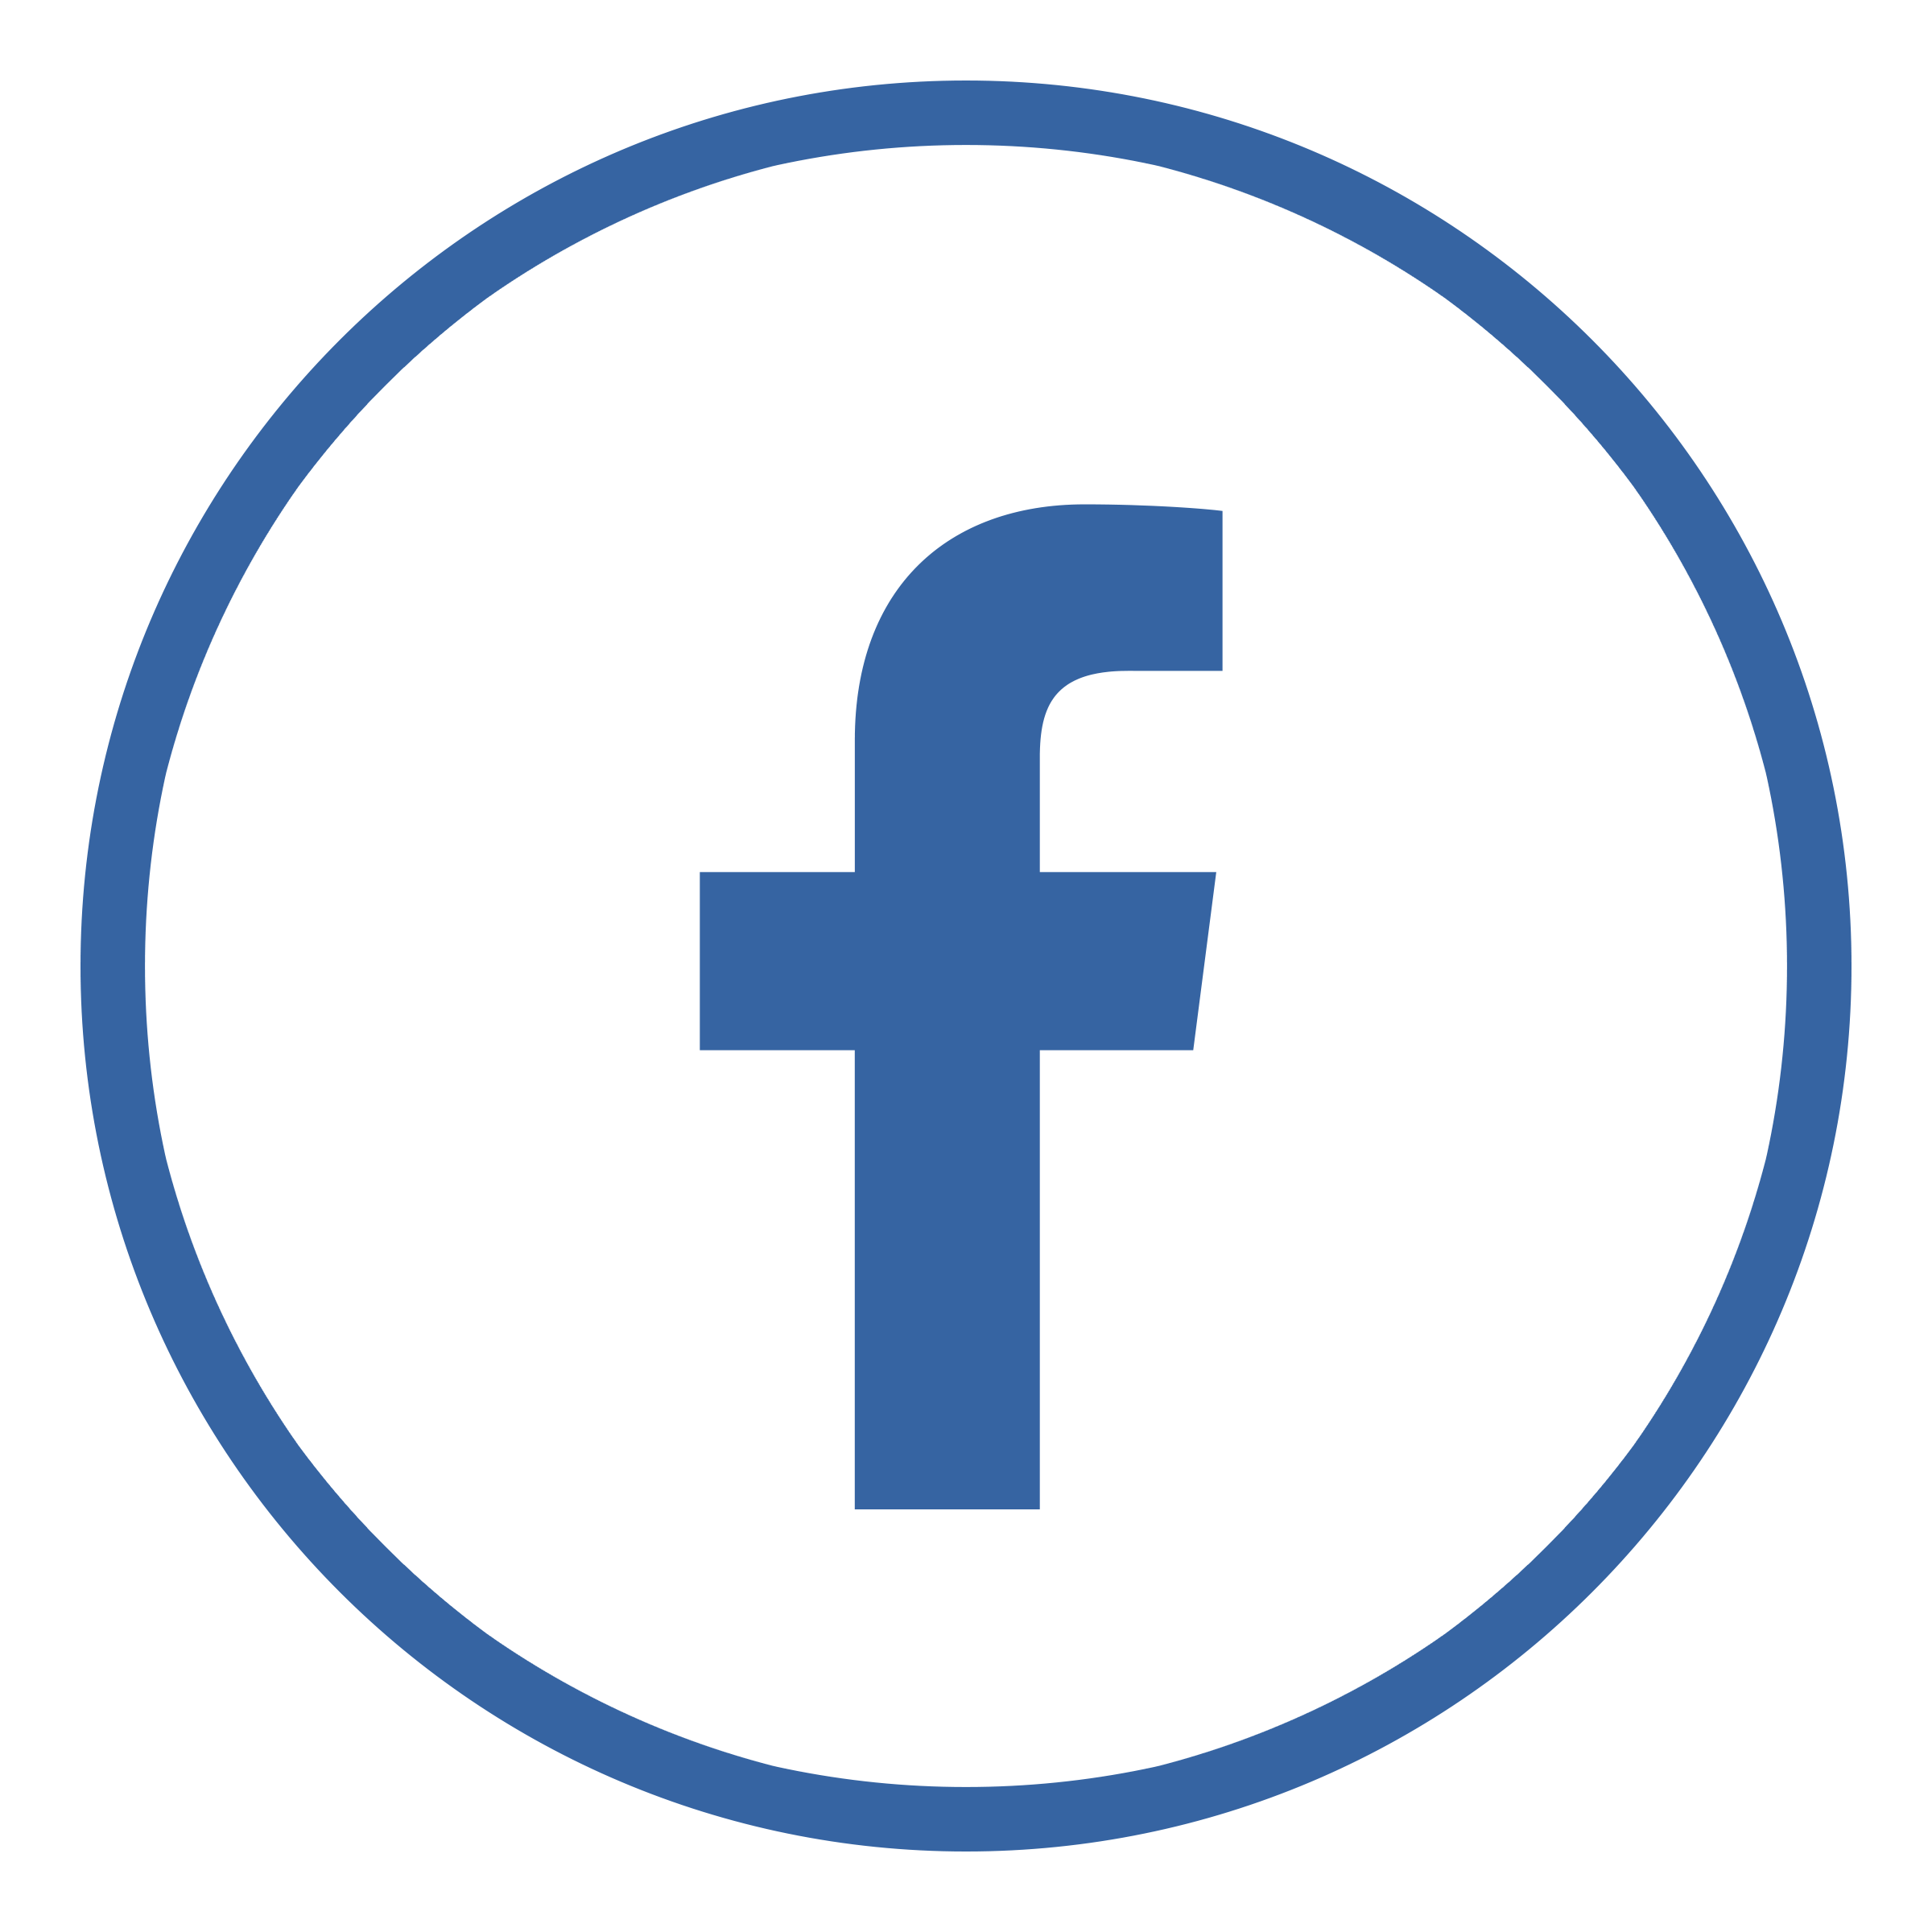 Logo Circle Facebook Download Free Image PNG Image